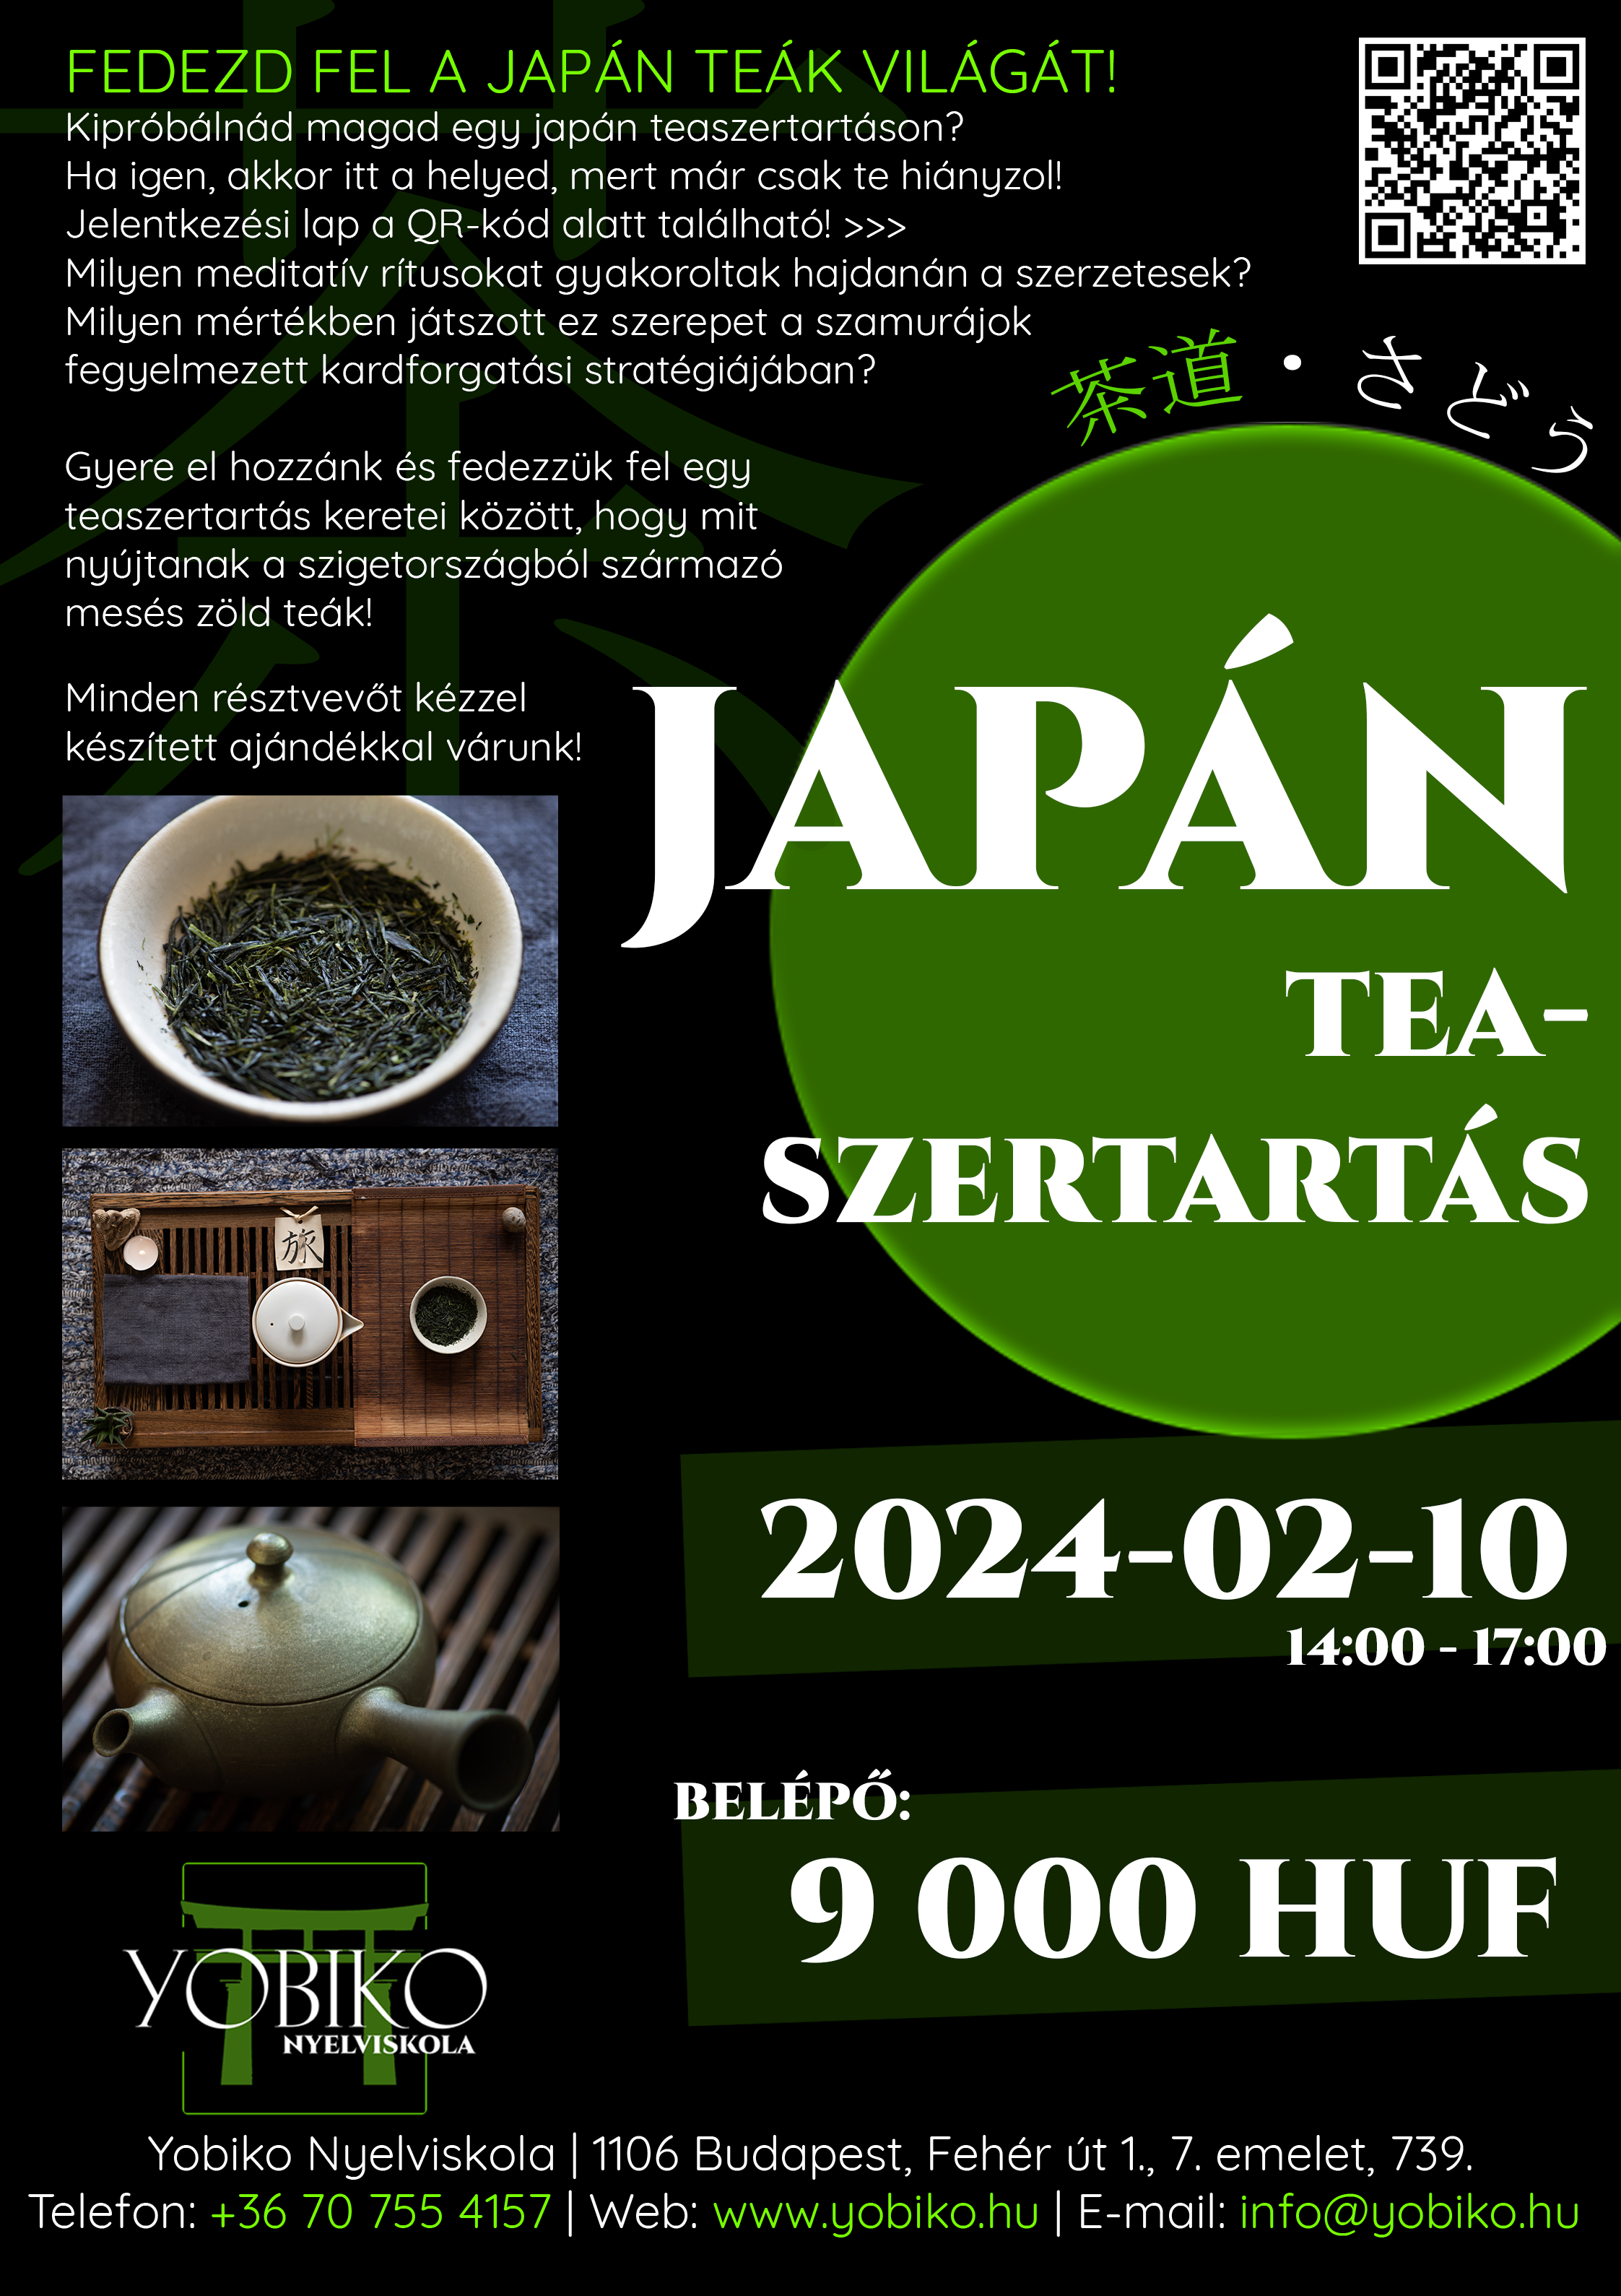 Teaszertartás – A japán zöld teák világa (2024. február 10-11.)